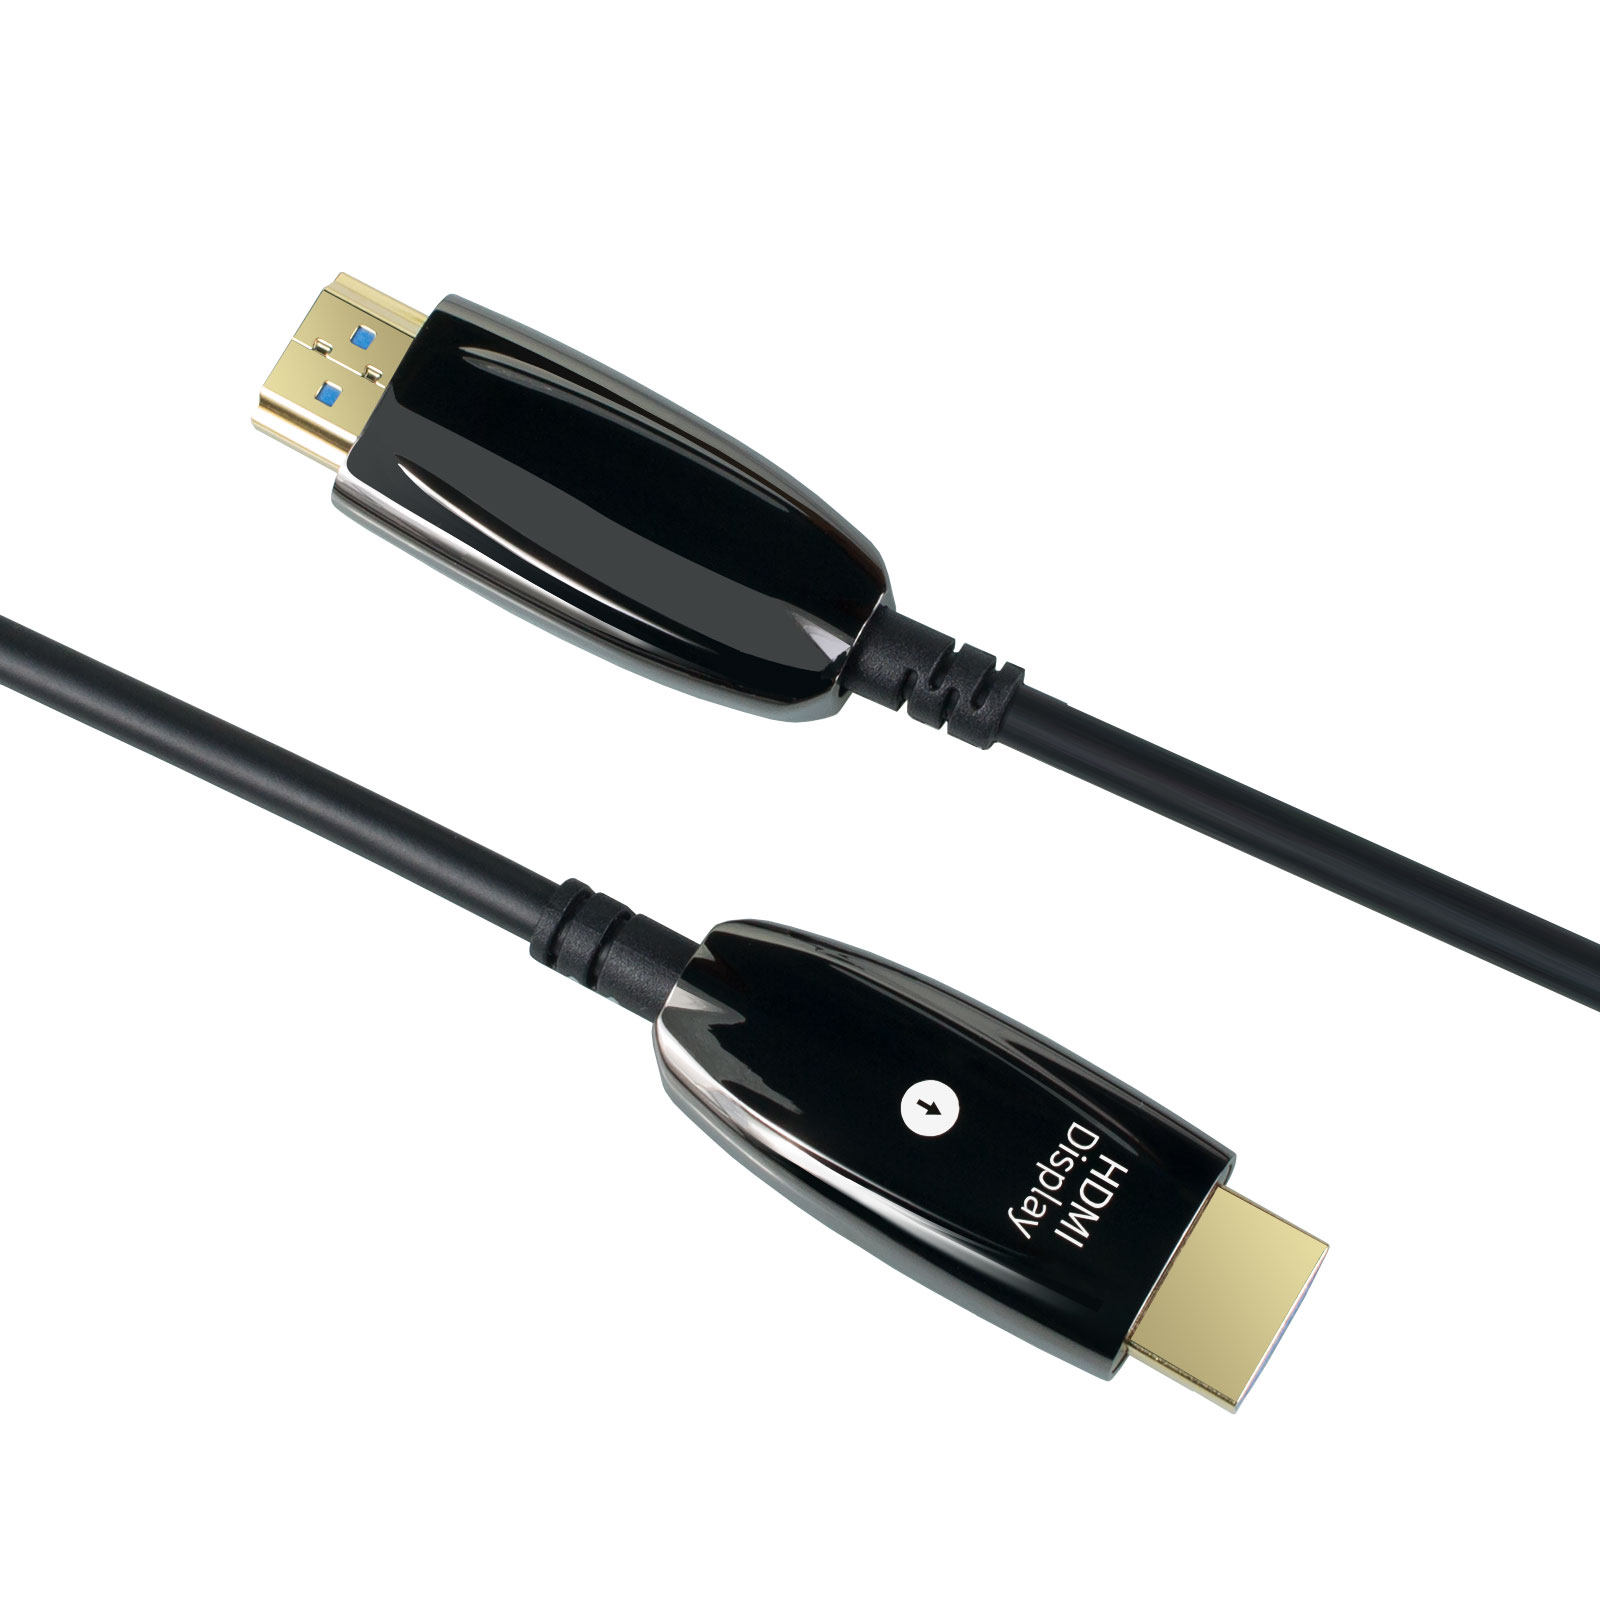 性价比高的HDMI光纤线